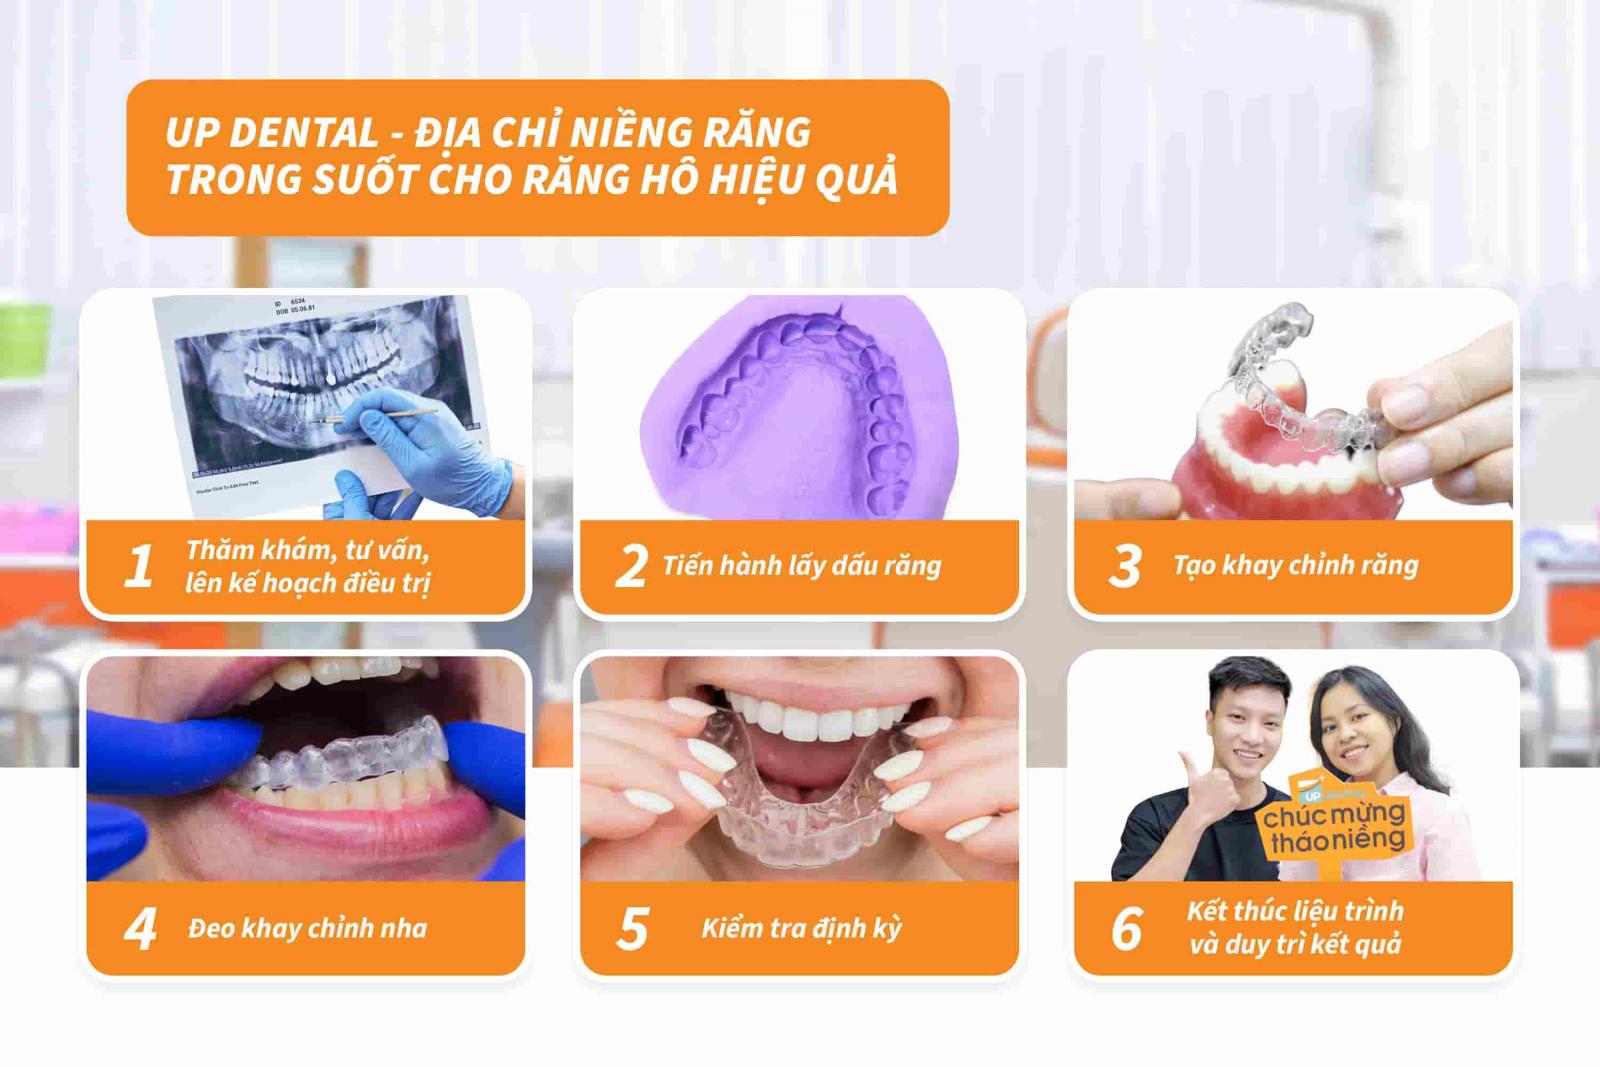 Up Dental - Địa chỉ niềng răng trong suốt cho răng hô hiệu quả